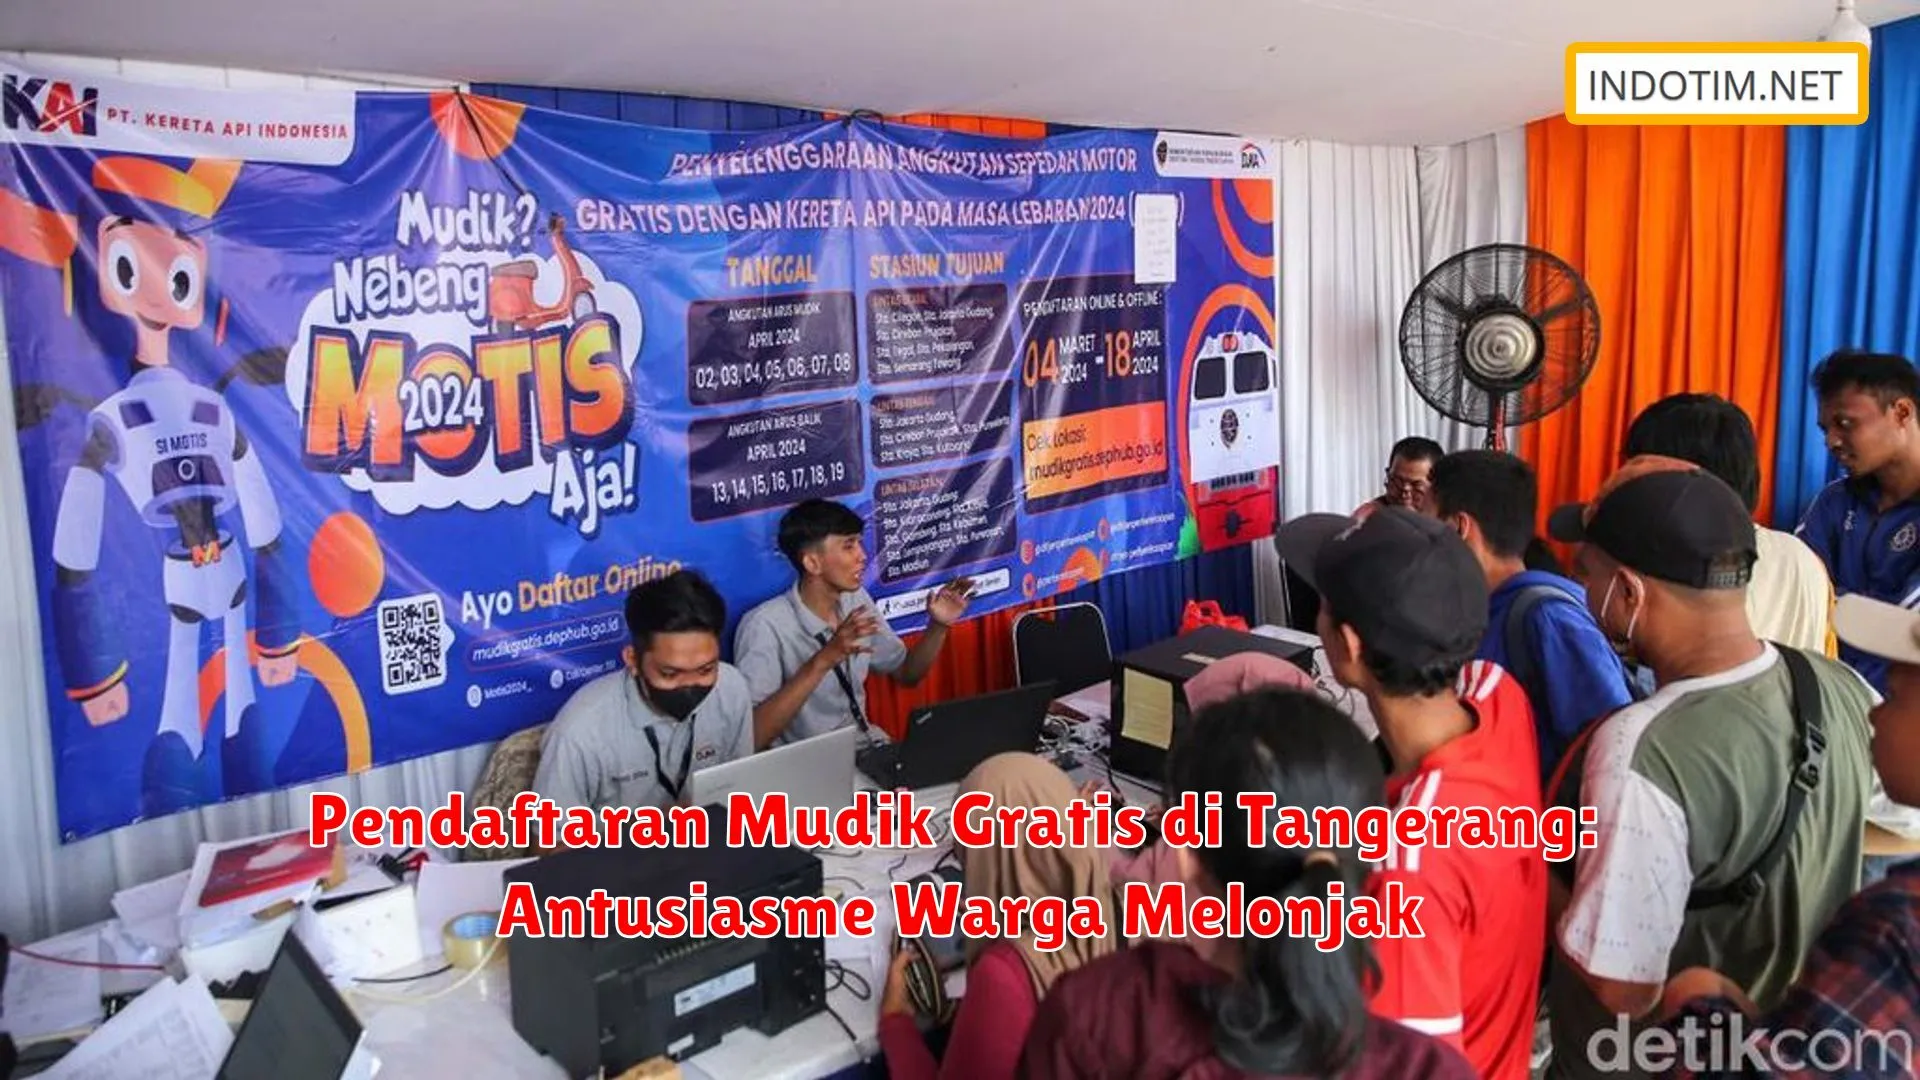 Pendaftaran Mudik Gratis di Tangerang: Antusiasme Warga Melonjak